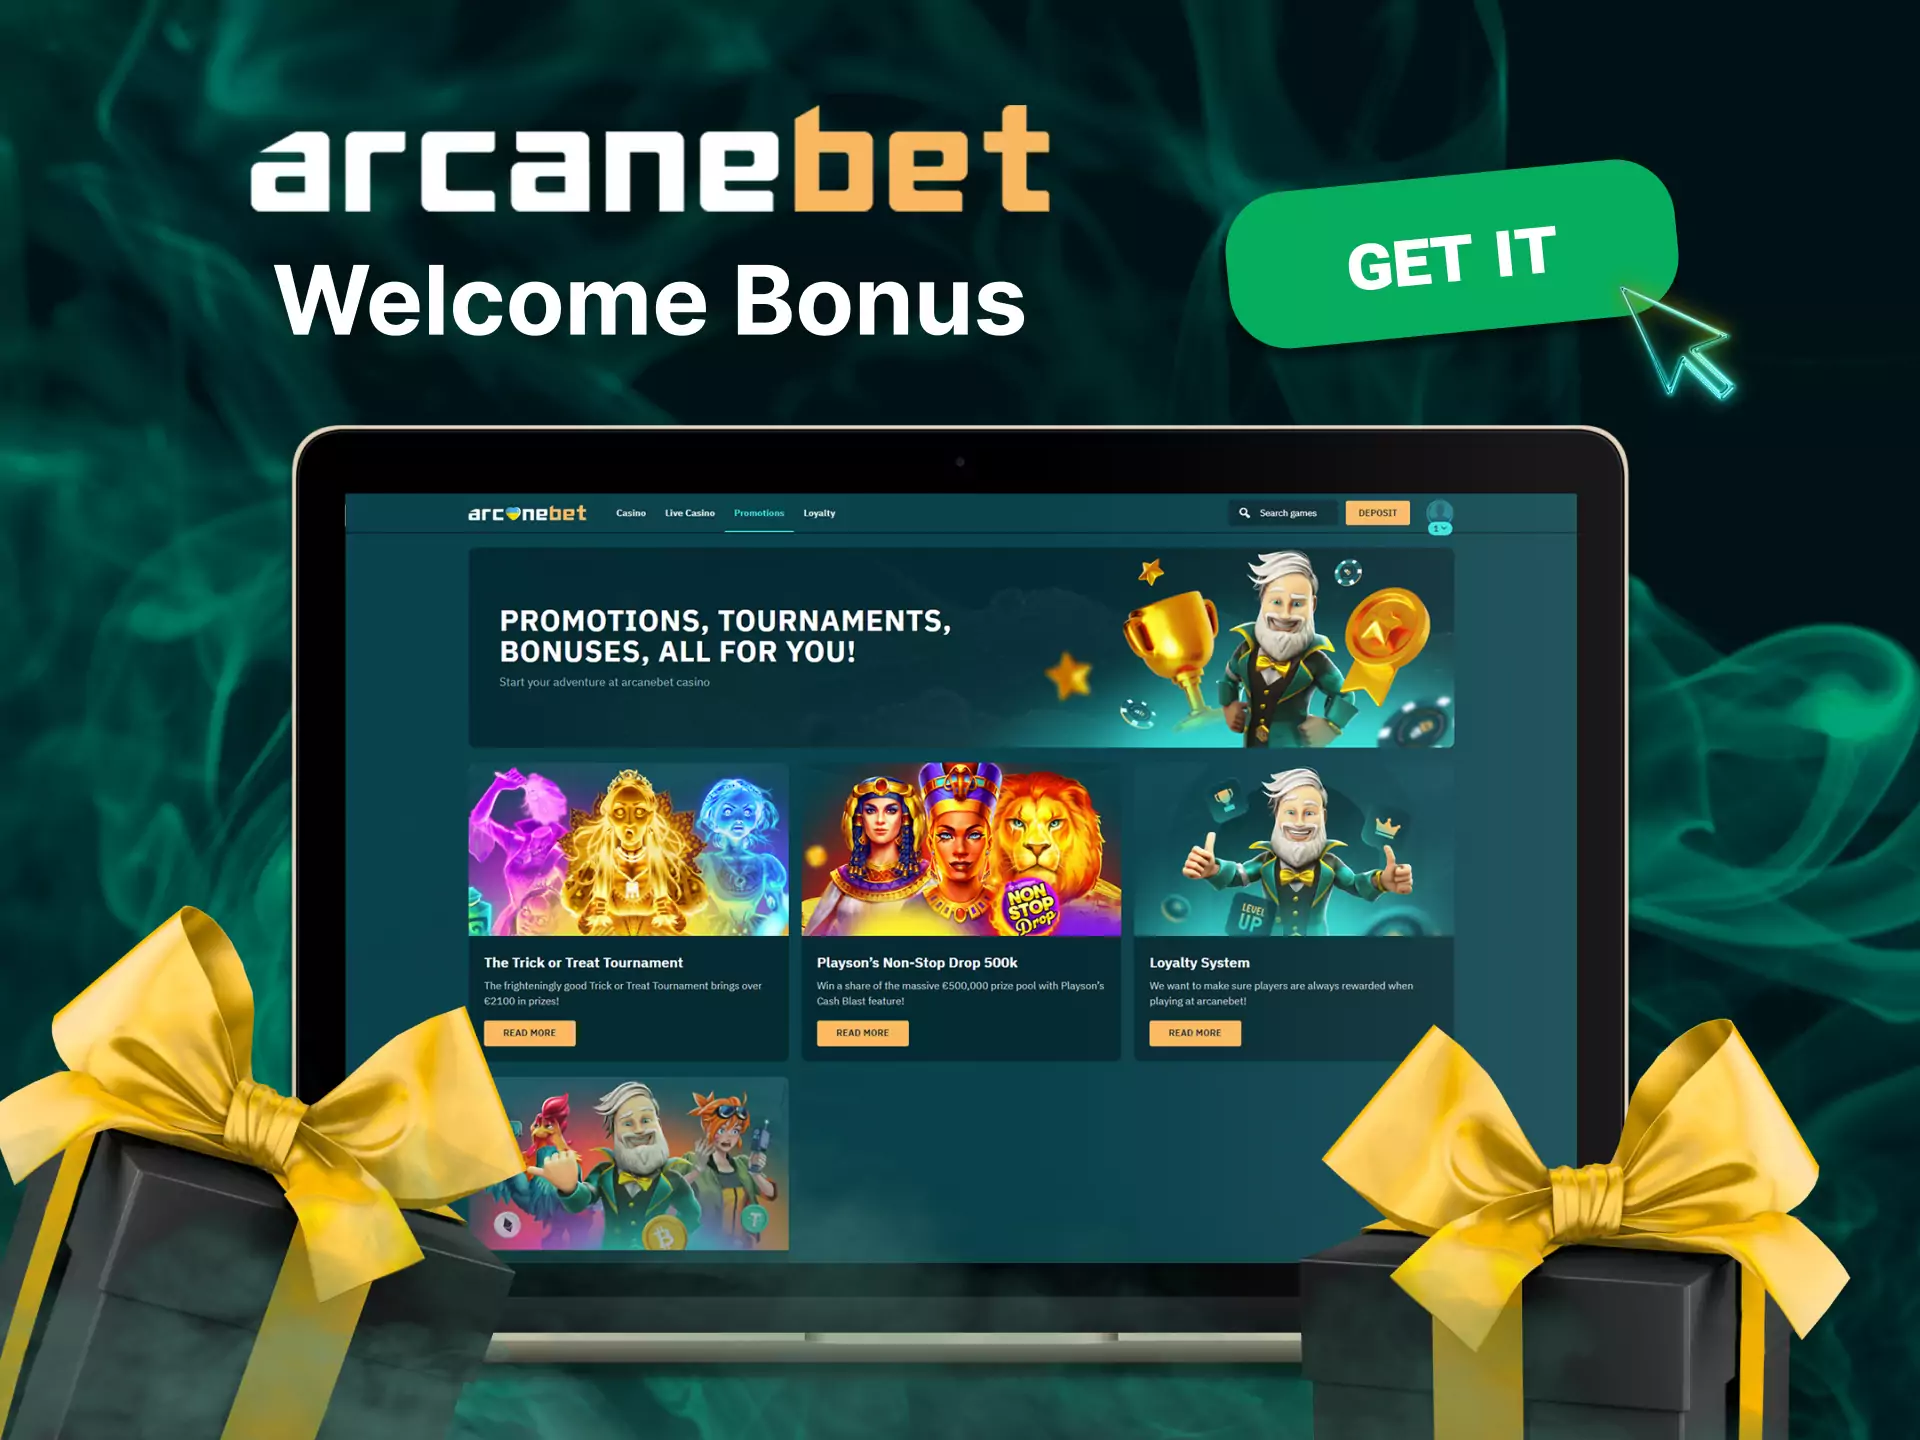 Get a special welcome bonus at Arcanebet Casino.